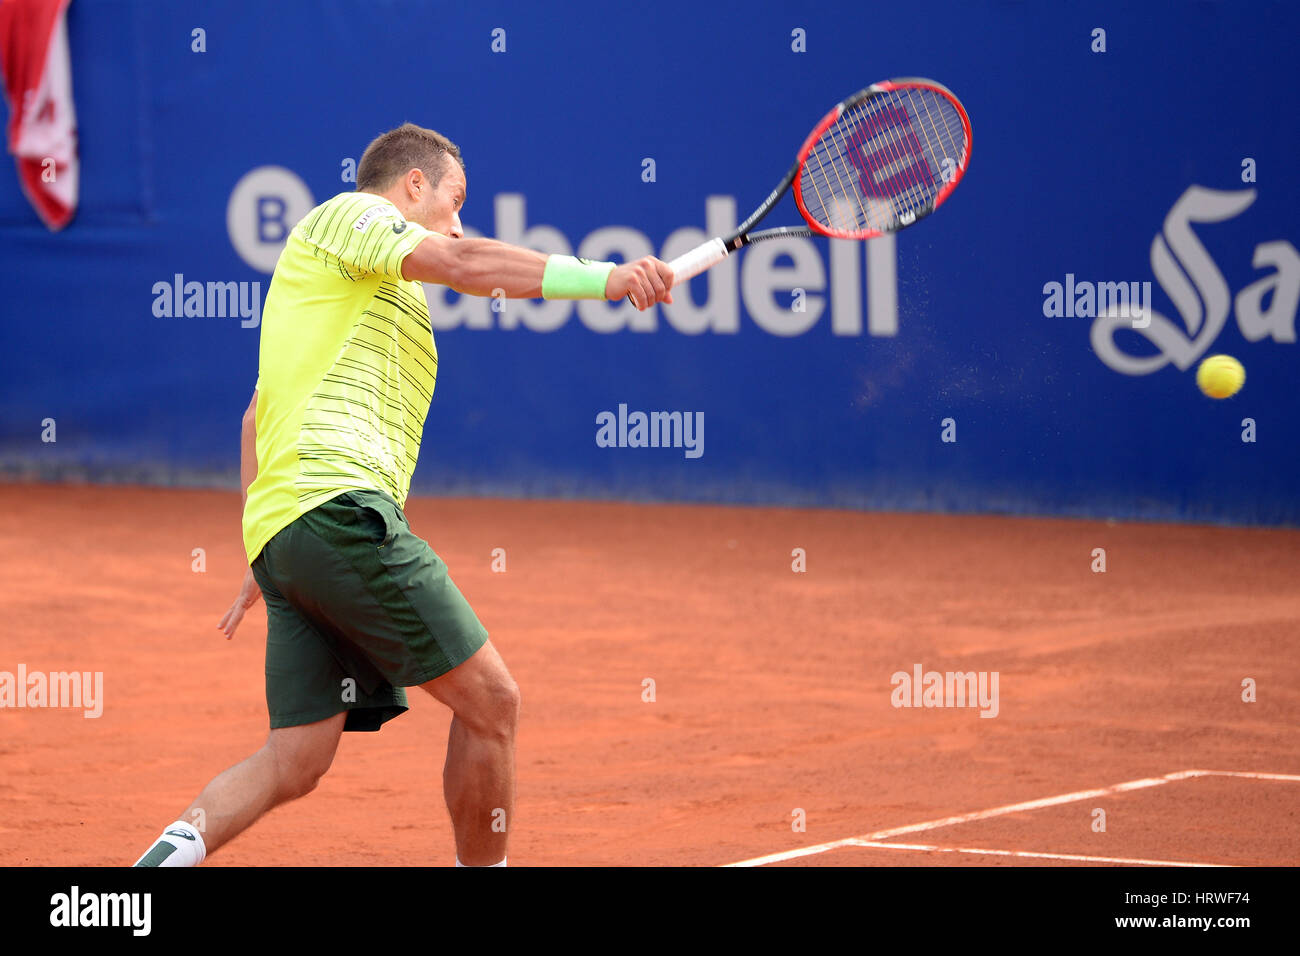 BARCELONA - 24 APR: Philipp Kohlschreiber (Tennisspieler aus Deutschland) feiert einen Sieg bei der Tour ATP Barcelona Open Banc Sabadell Conde de Godo Stockfoto